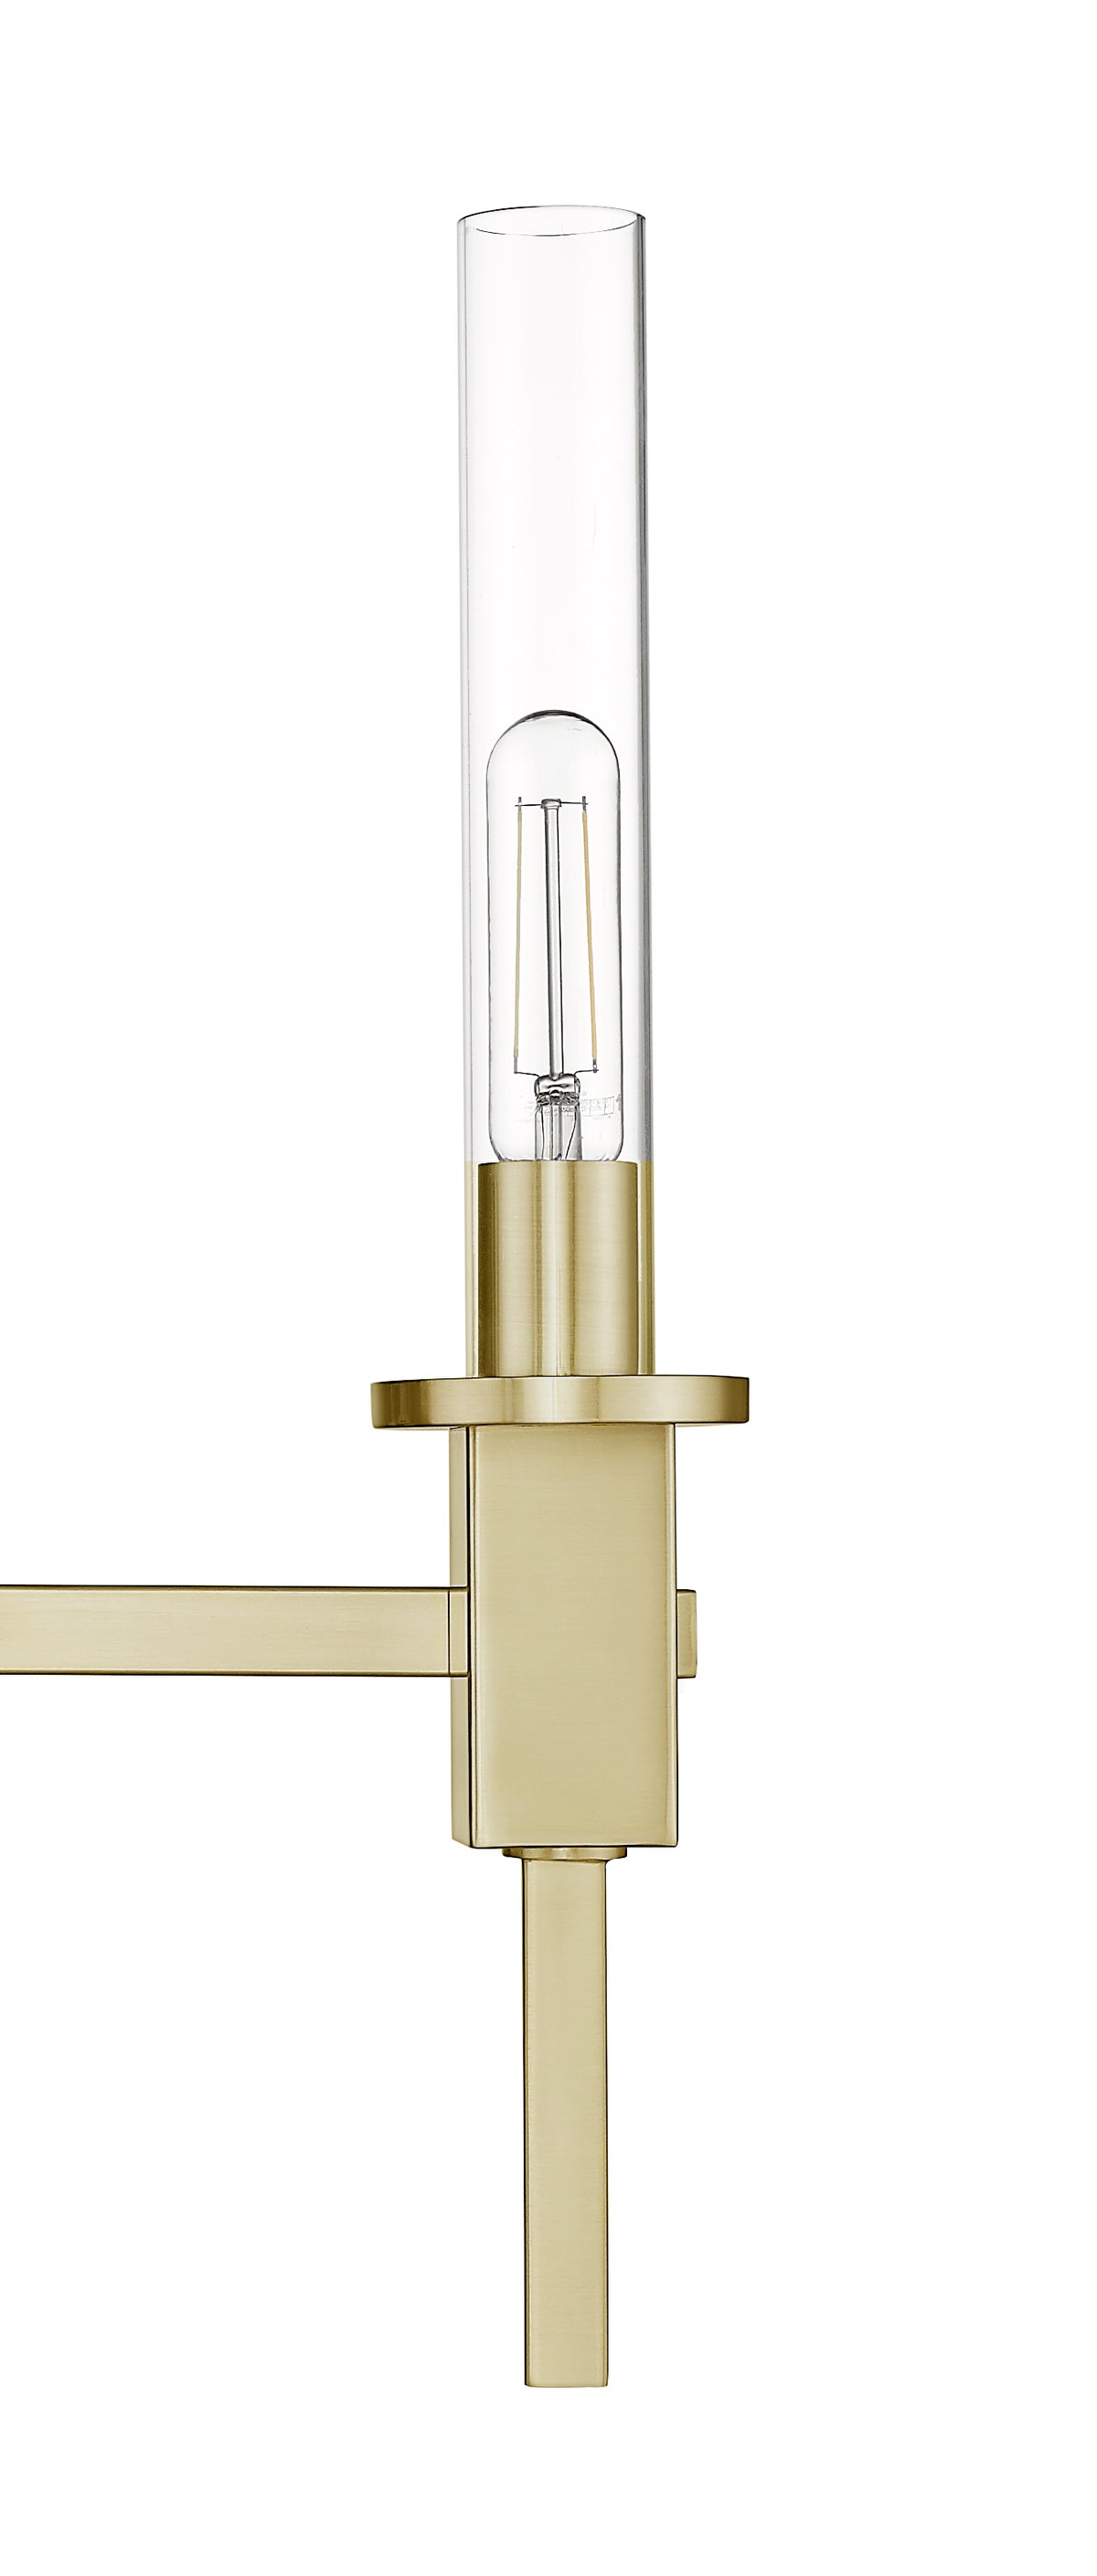 Gold glass tube wall light with 3 light - Vivio Lighting